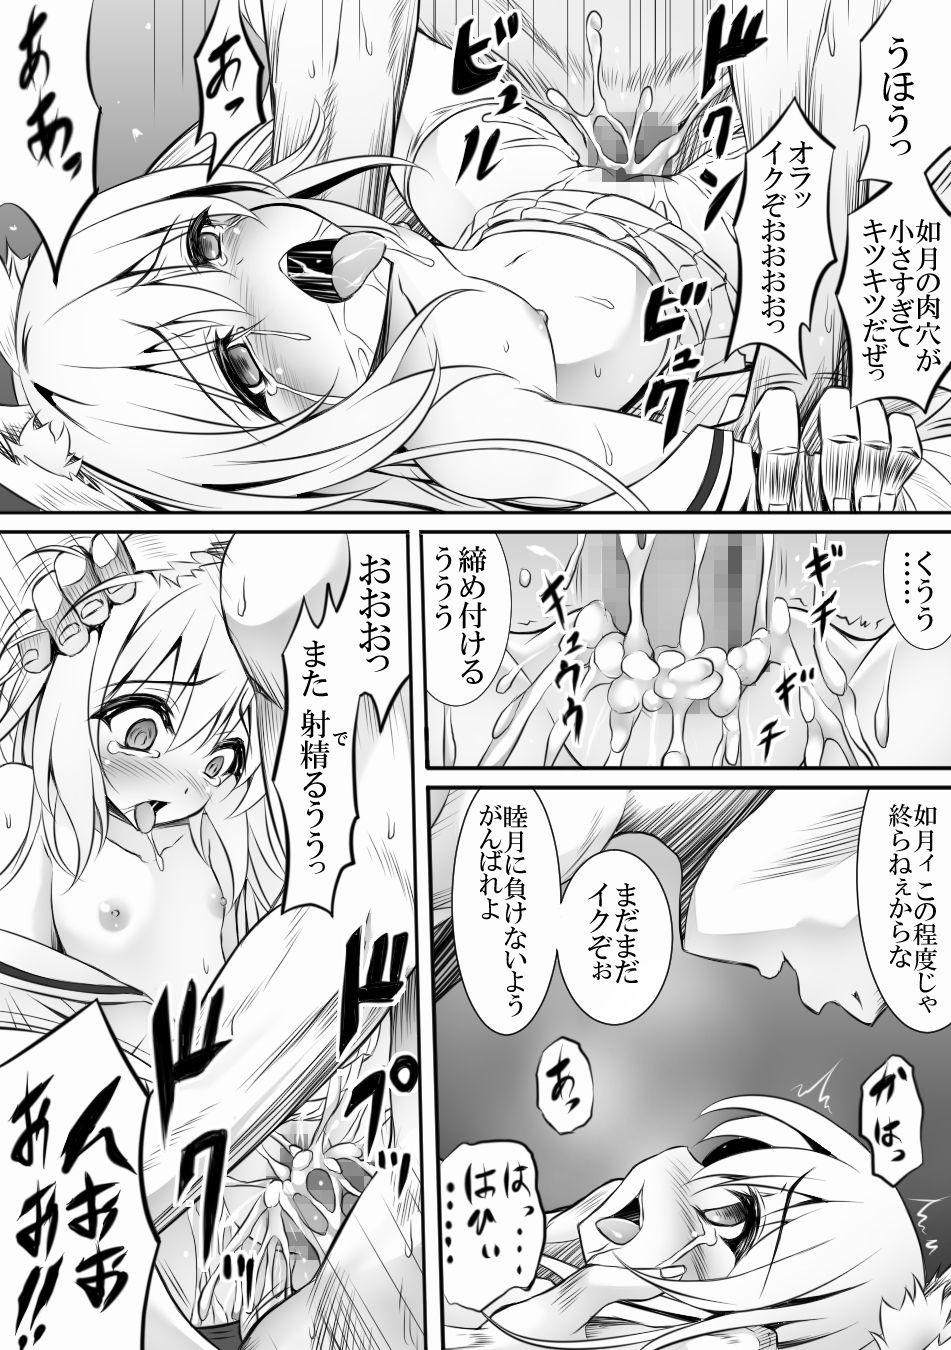 Woman AzuLan 1 Page Manga - Azur lane Big Tits - Page 1